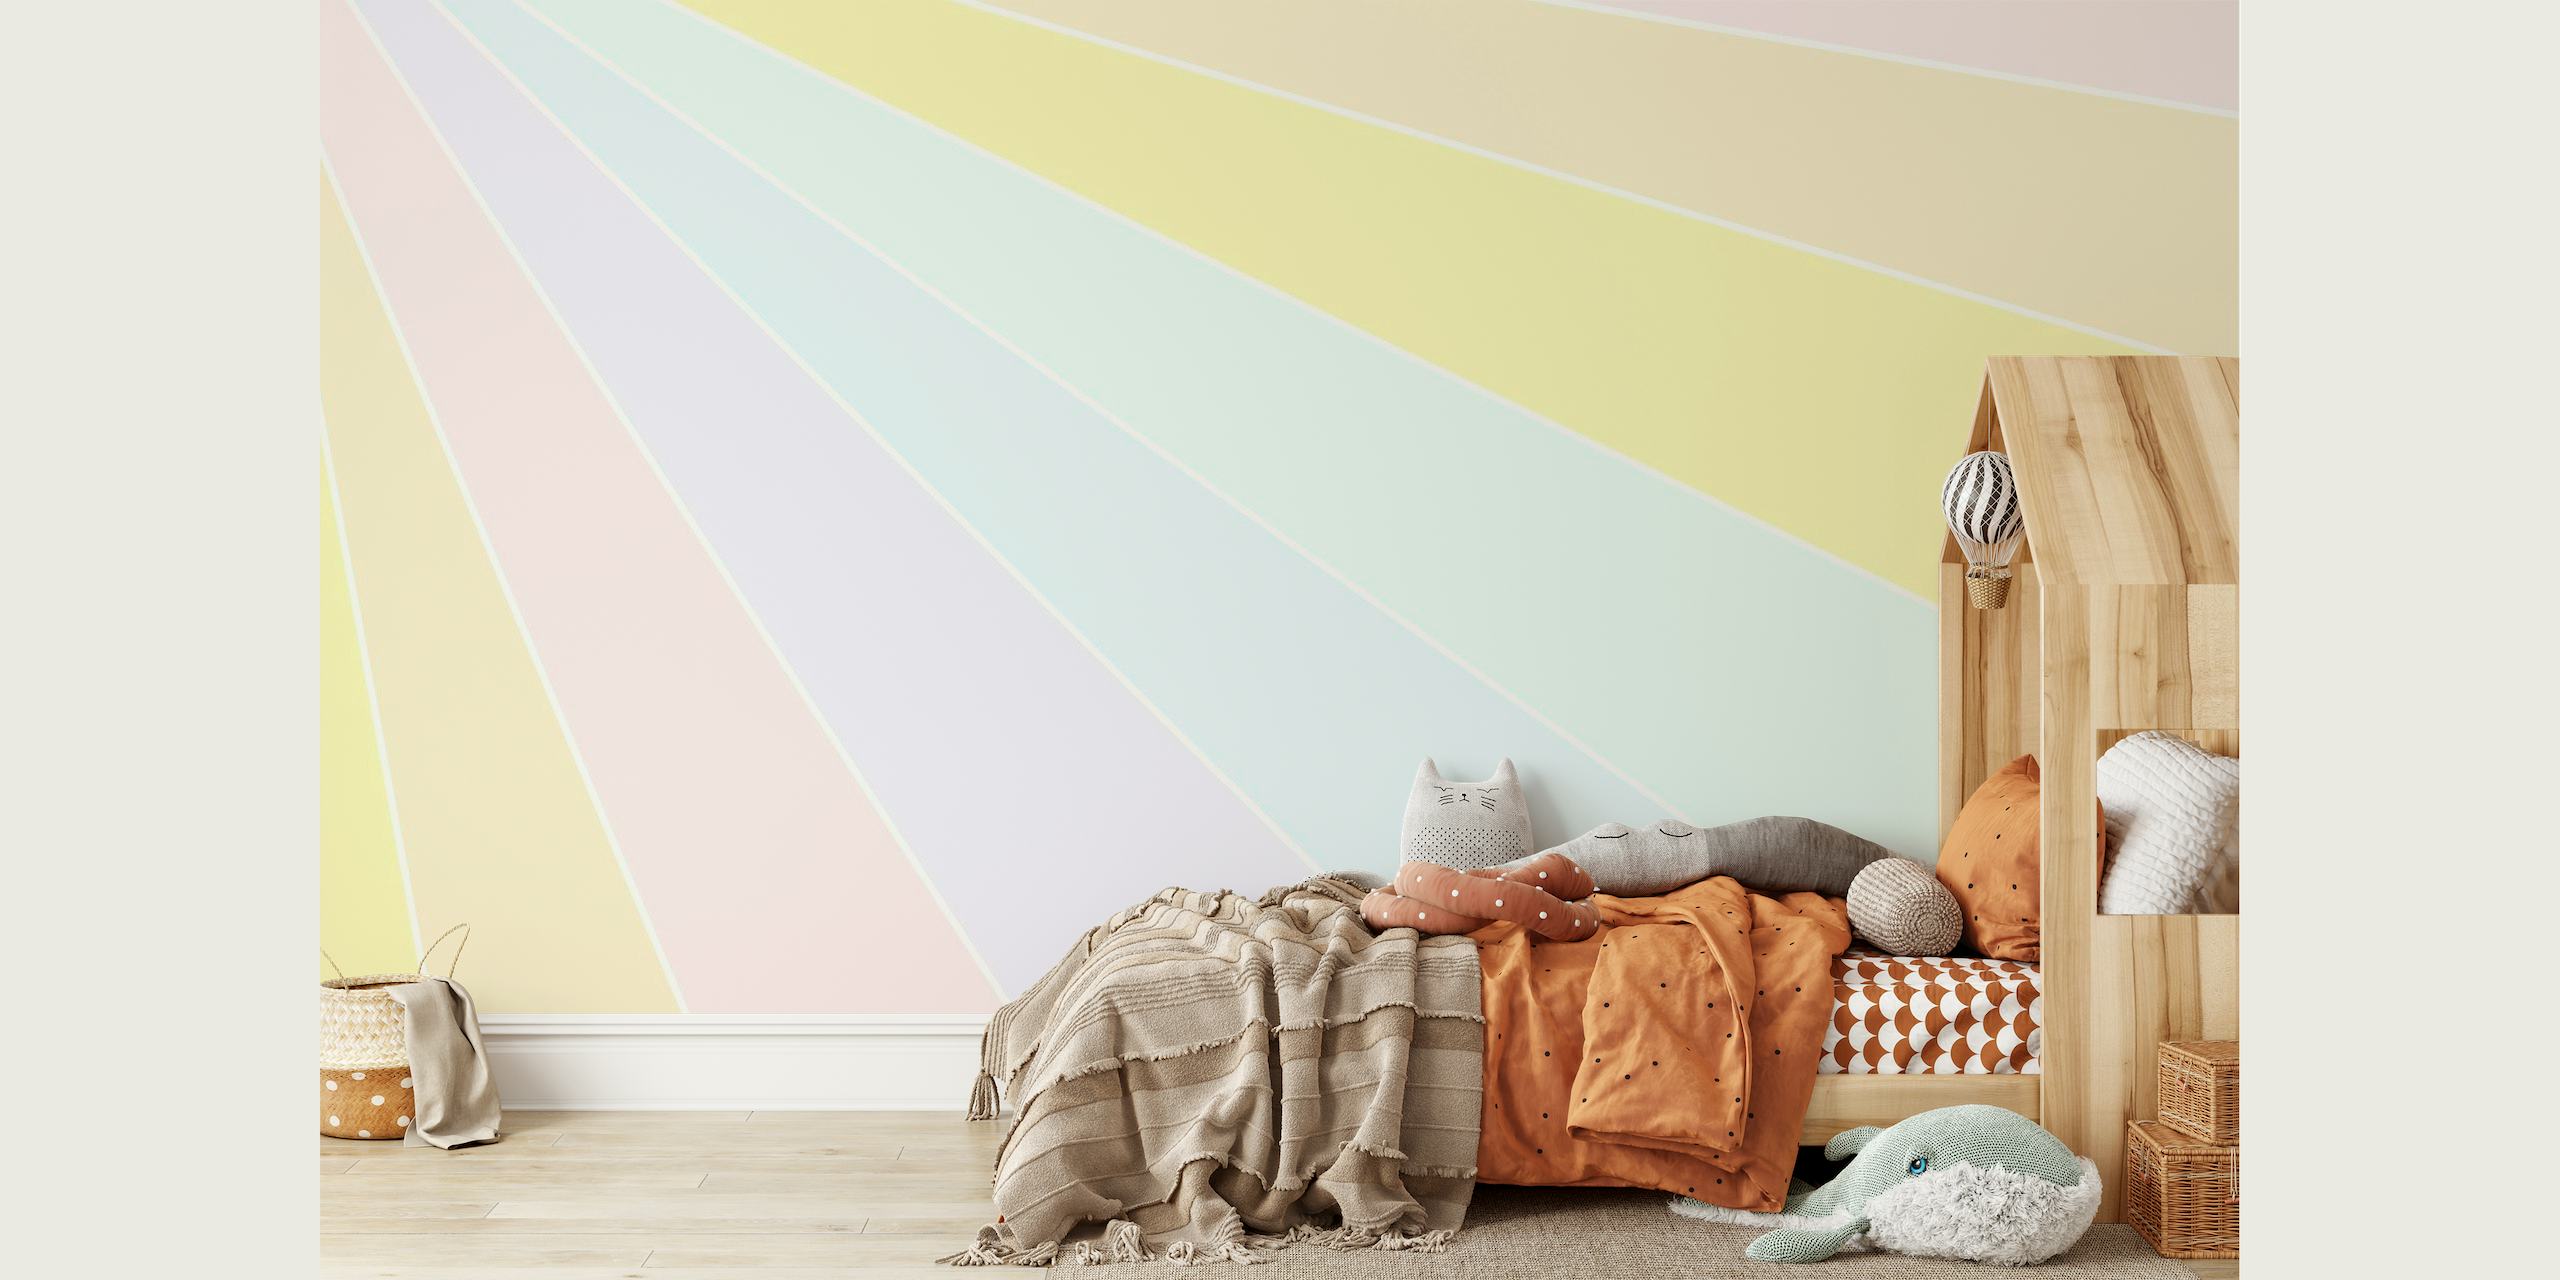 Papier peint arc-en-ciel pastel avec des bandes de couleurs douces et oniriques